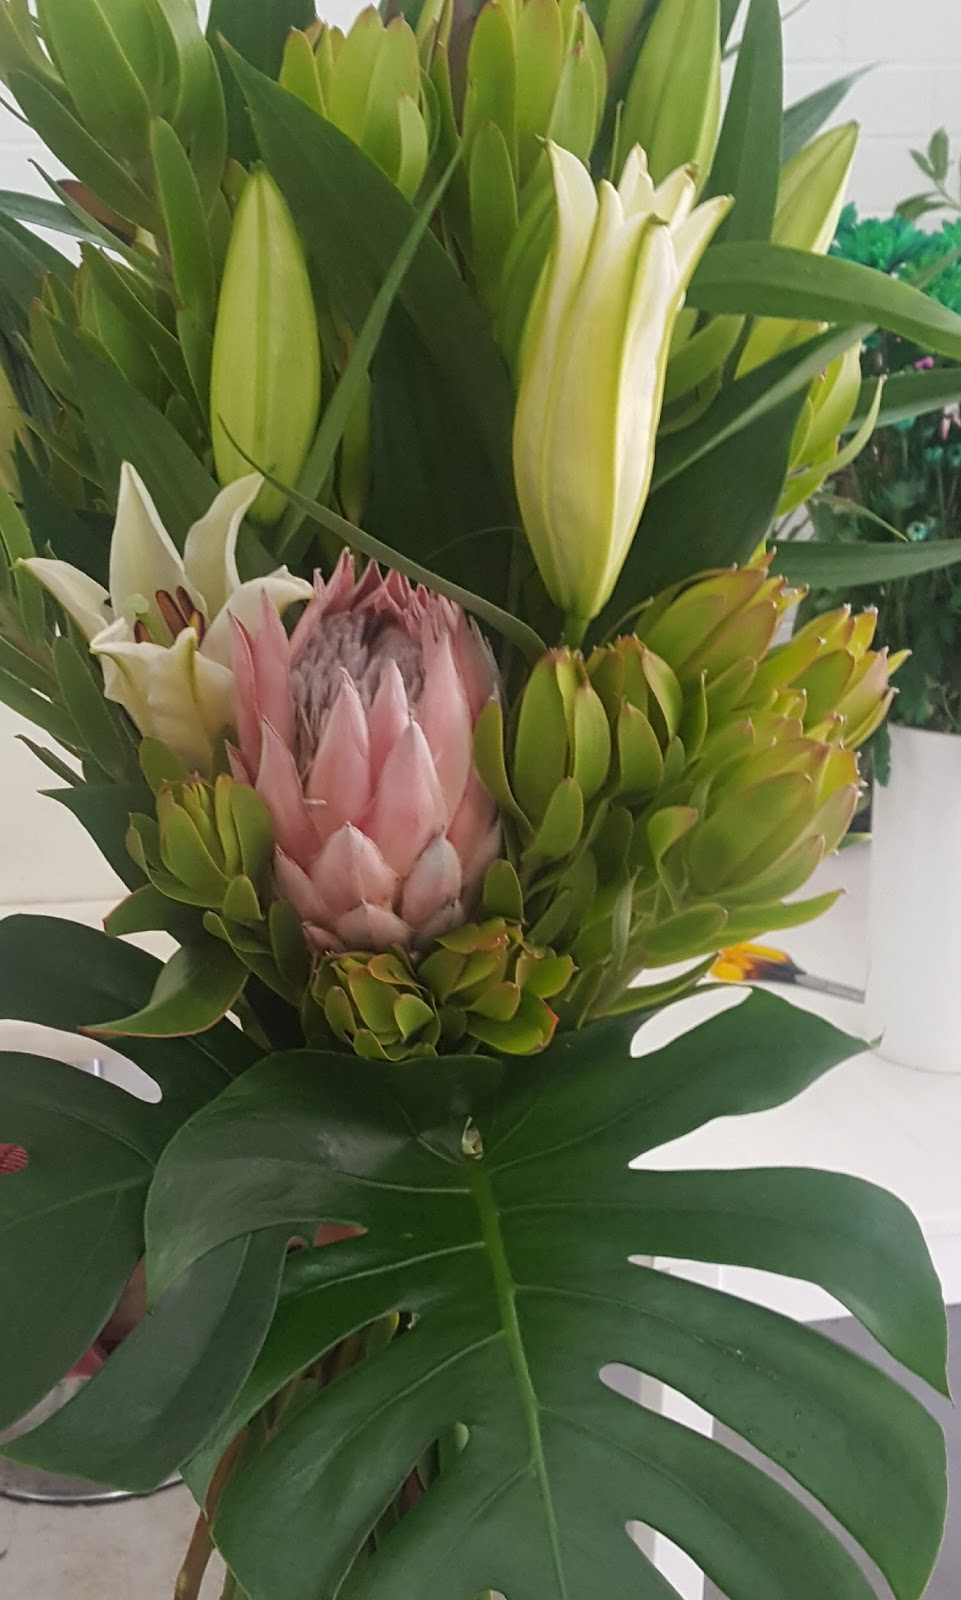 Katoomba Florist | florist | Shop/7 Pioneer Pl, Katoomba NSW 2780, Australia | 0247822844 OR +61 2 4782 2844